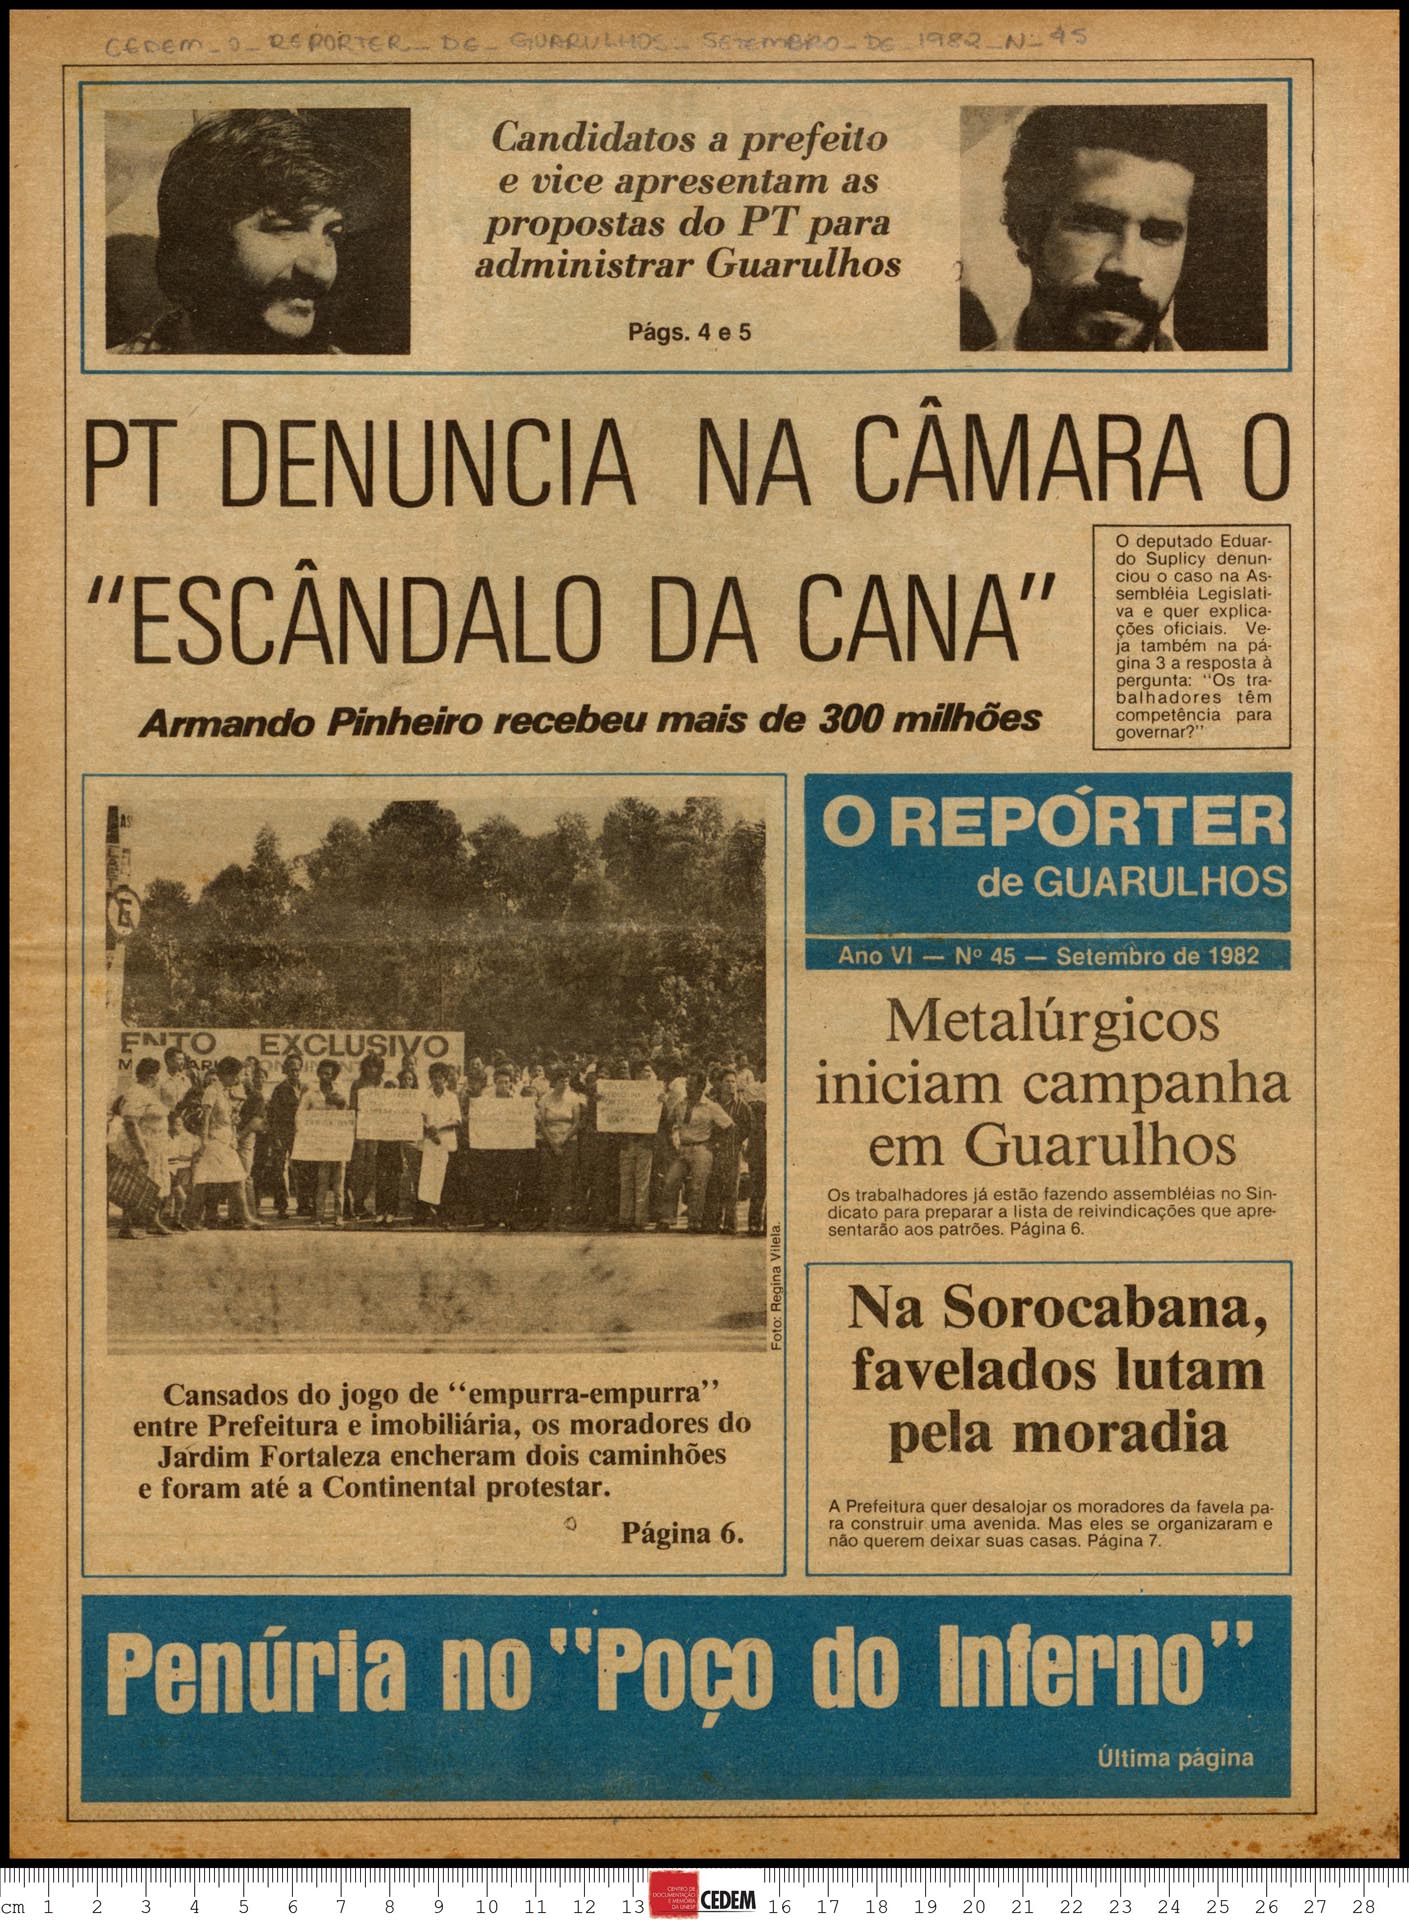 O reportér de Guarulhos - 45 - set. 1982